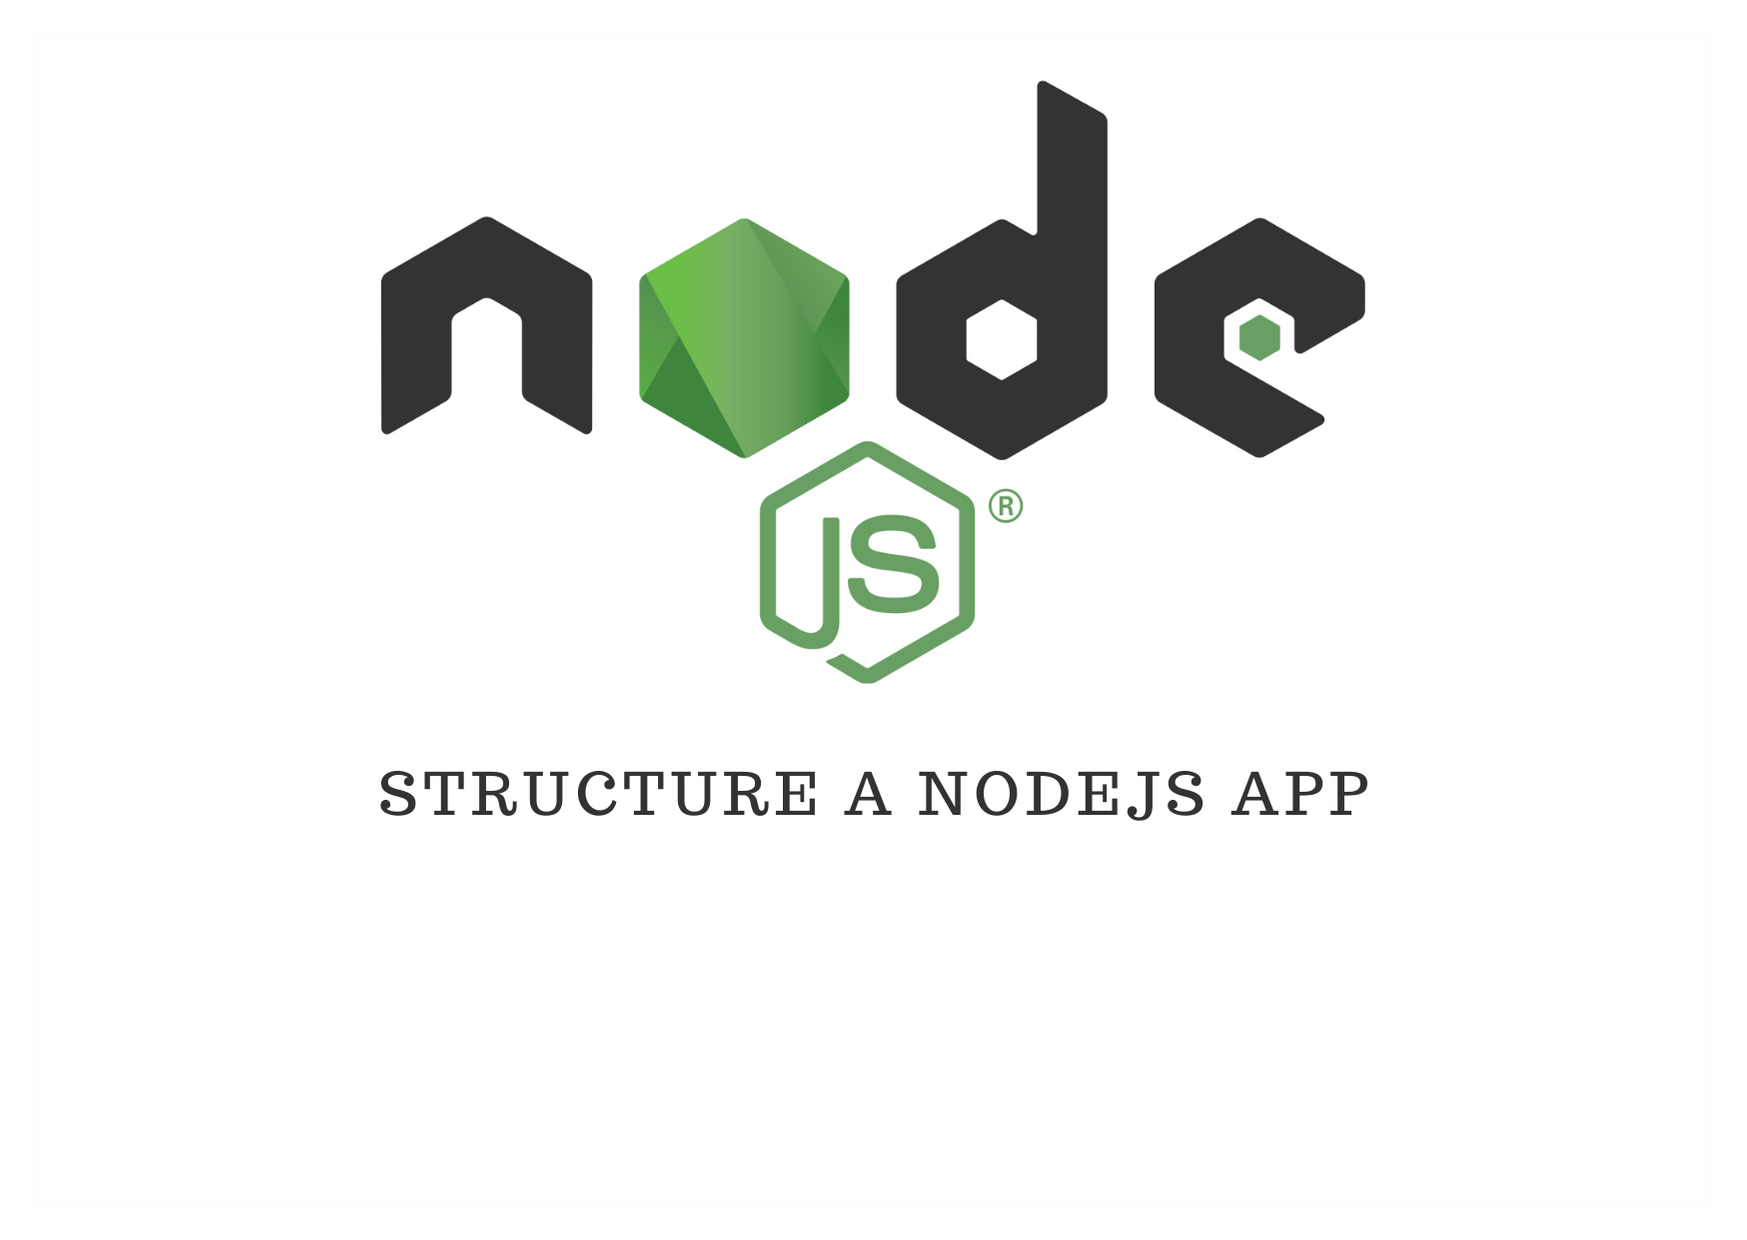 Nodejs app structure